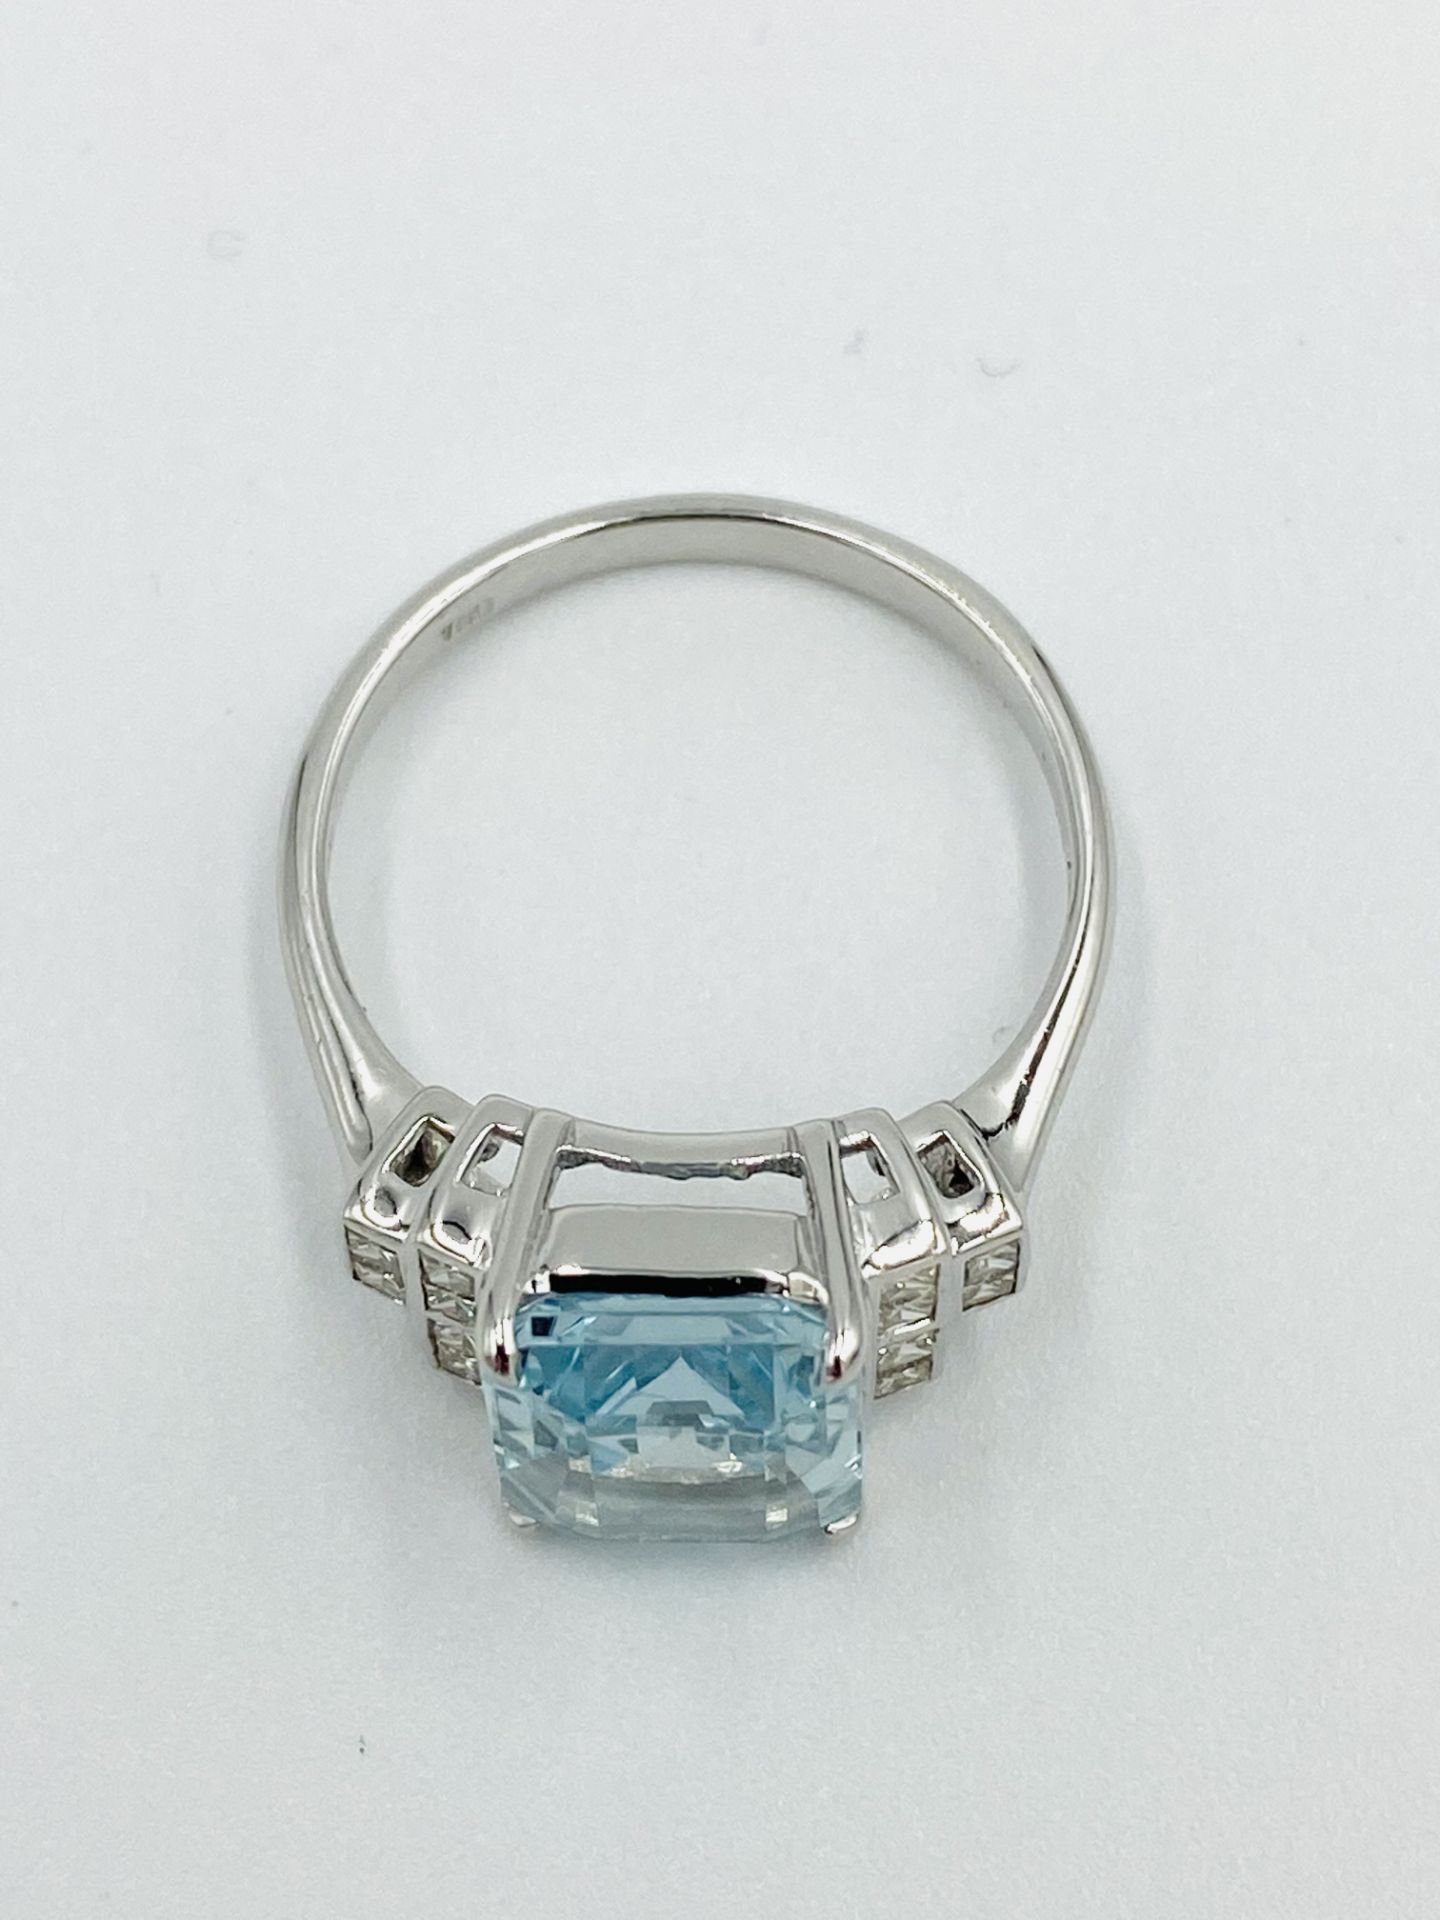 18ct white gold, aquamarine and diamond ring - Image 5 of 6